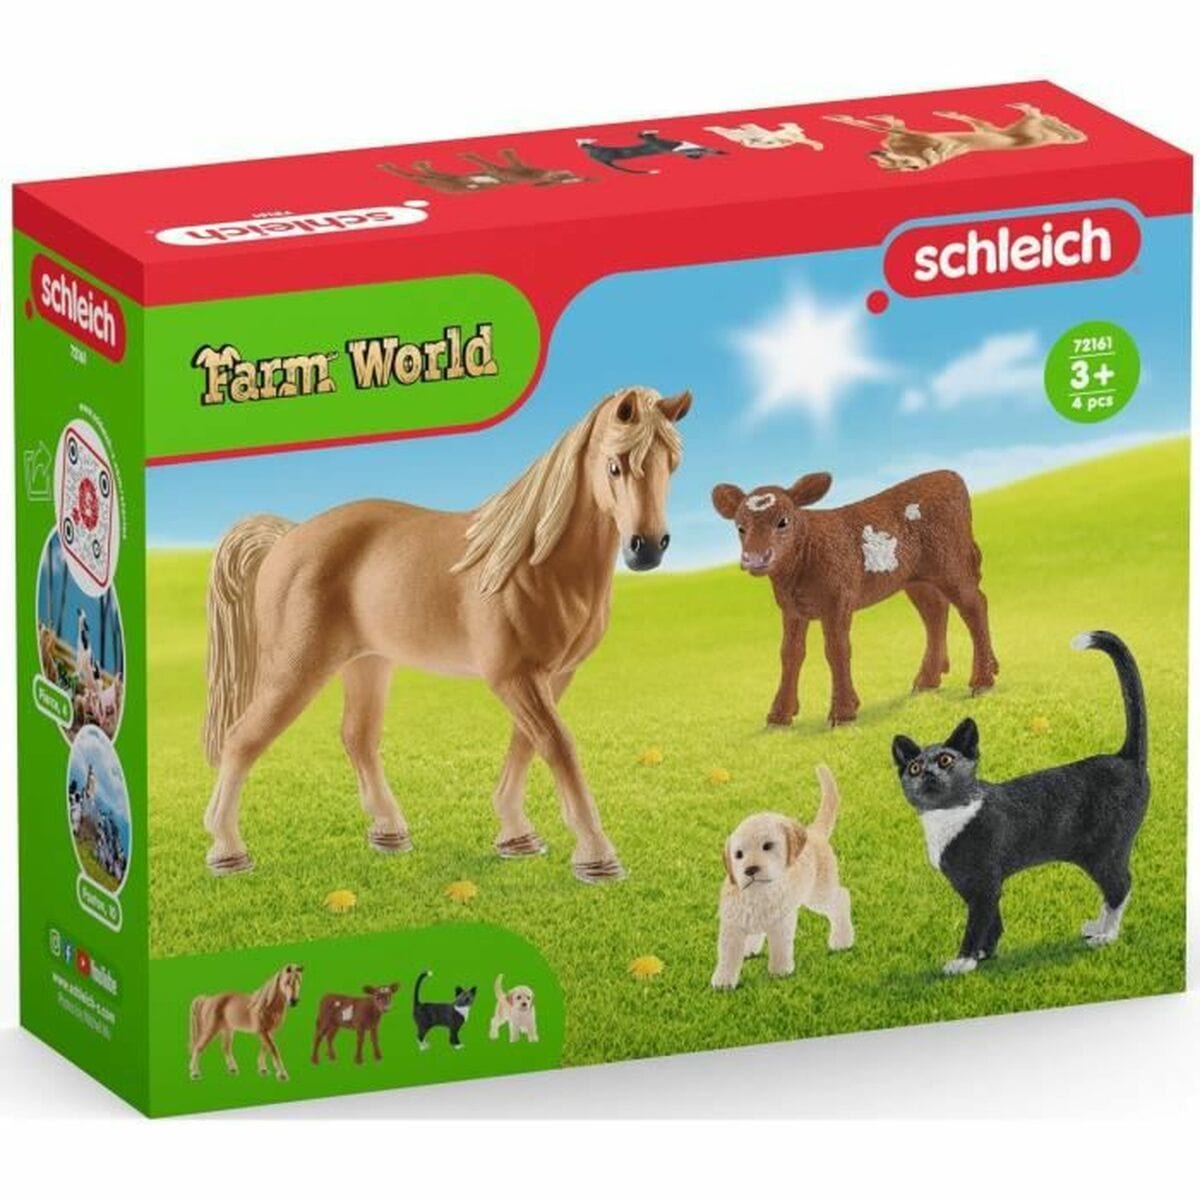 Schleich Spielzeug | Kostüme > Spielzeug und Spiele > Action-Figuren Set Tiere vom Bauernhof Schleich